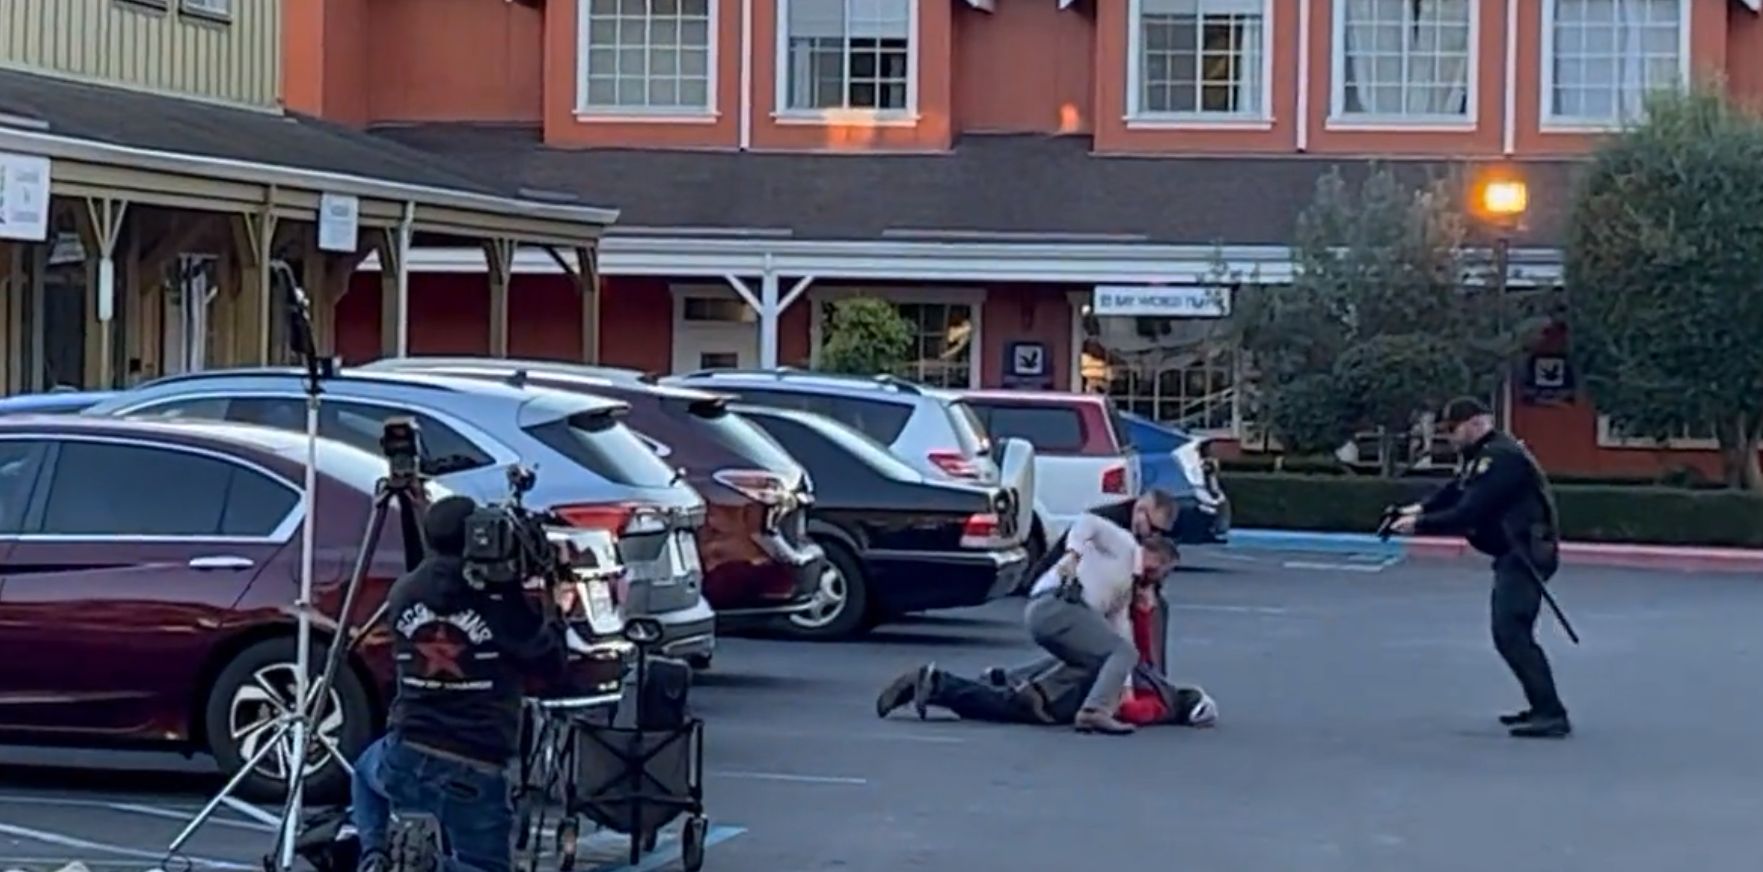 Al doilea atac armat din California în 48 de ore. 18 oameni au fost împușcați mortal de același suspect. VIDEO